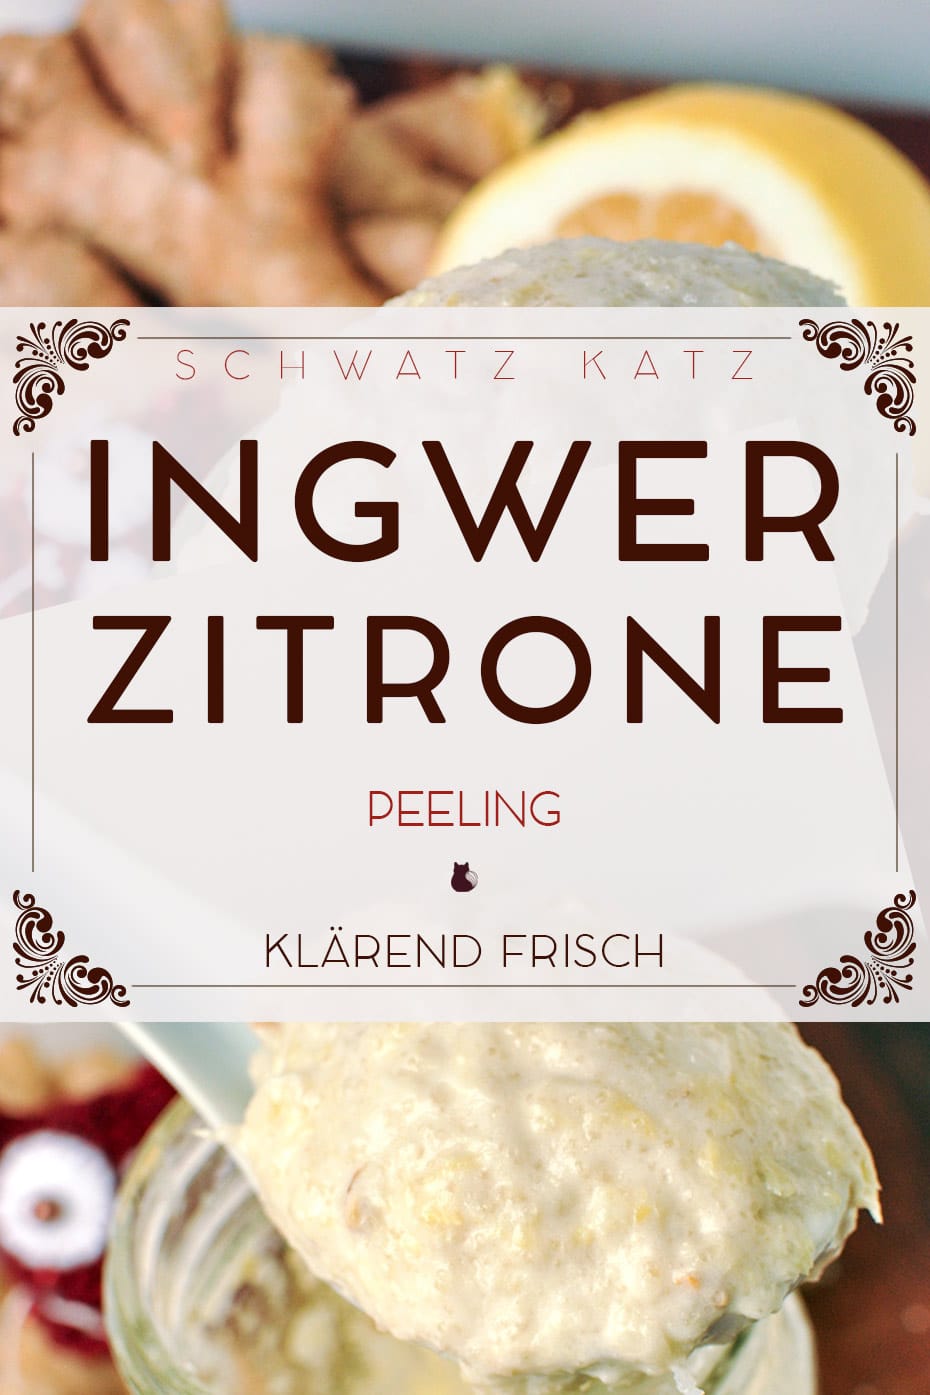 Klärend mildes Ingwer-Zucker Peeling selber machen / Schwatz Katz